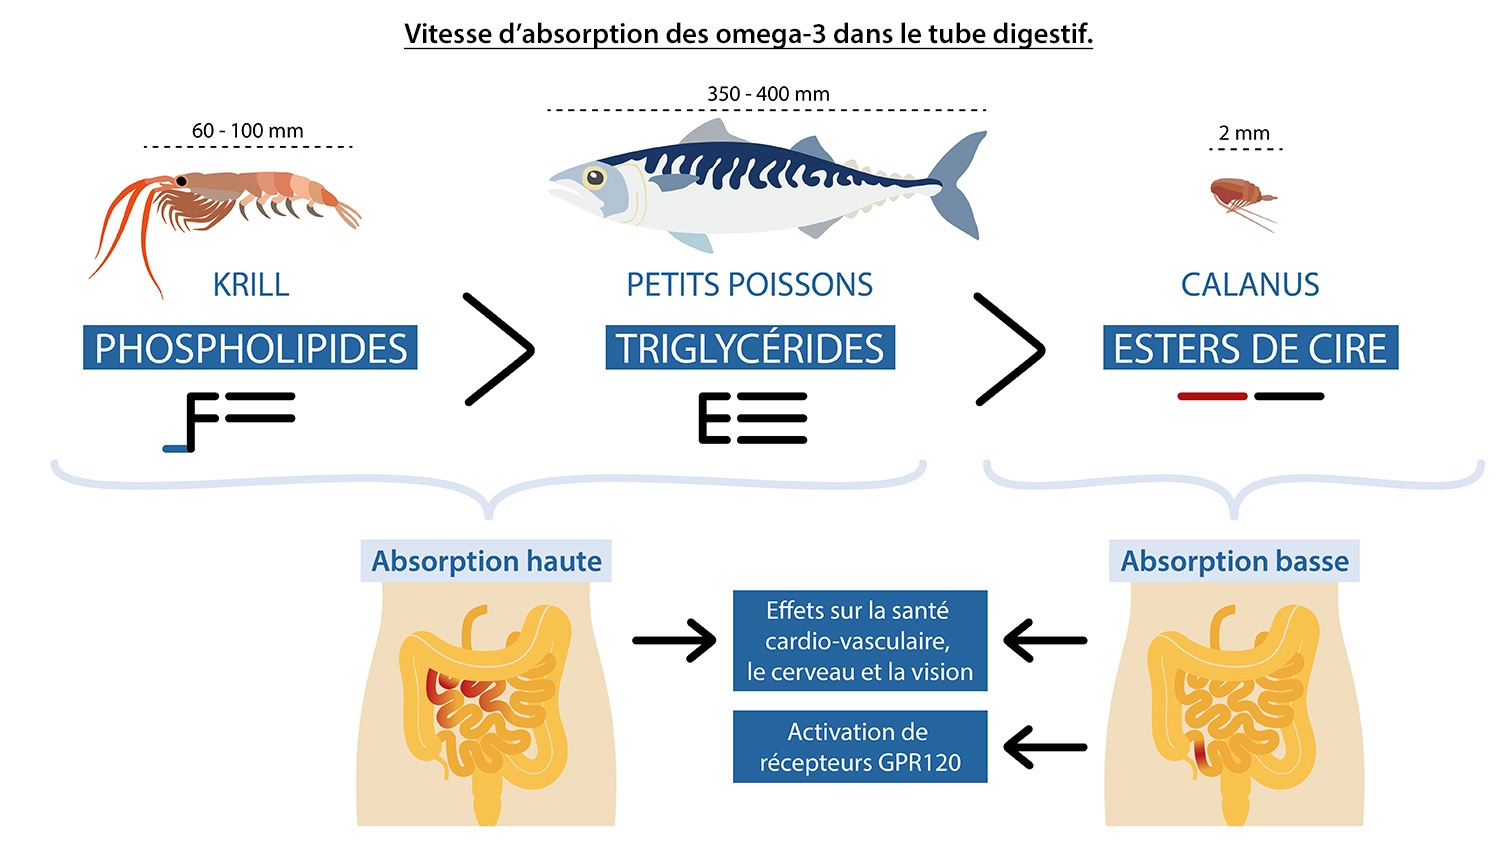 Vitesse d'absorption des omega-3 dans le tube digestif